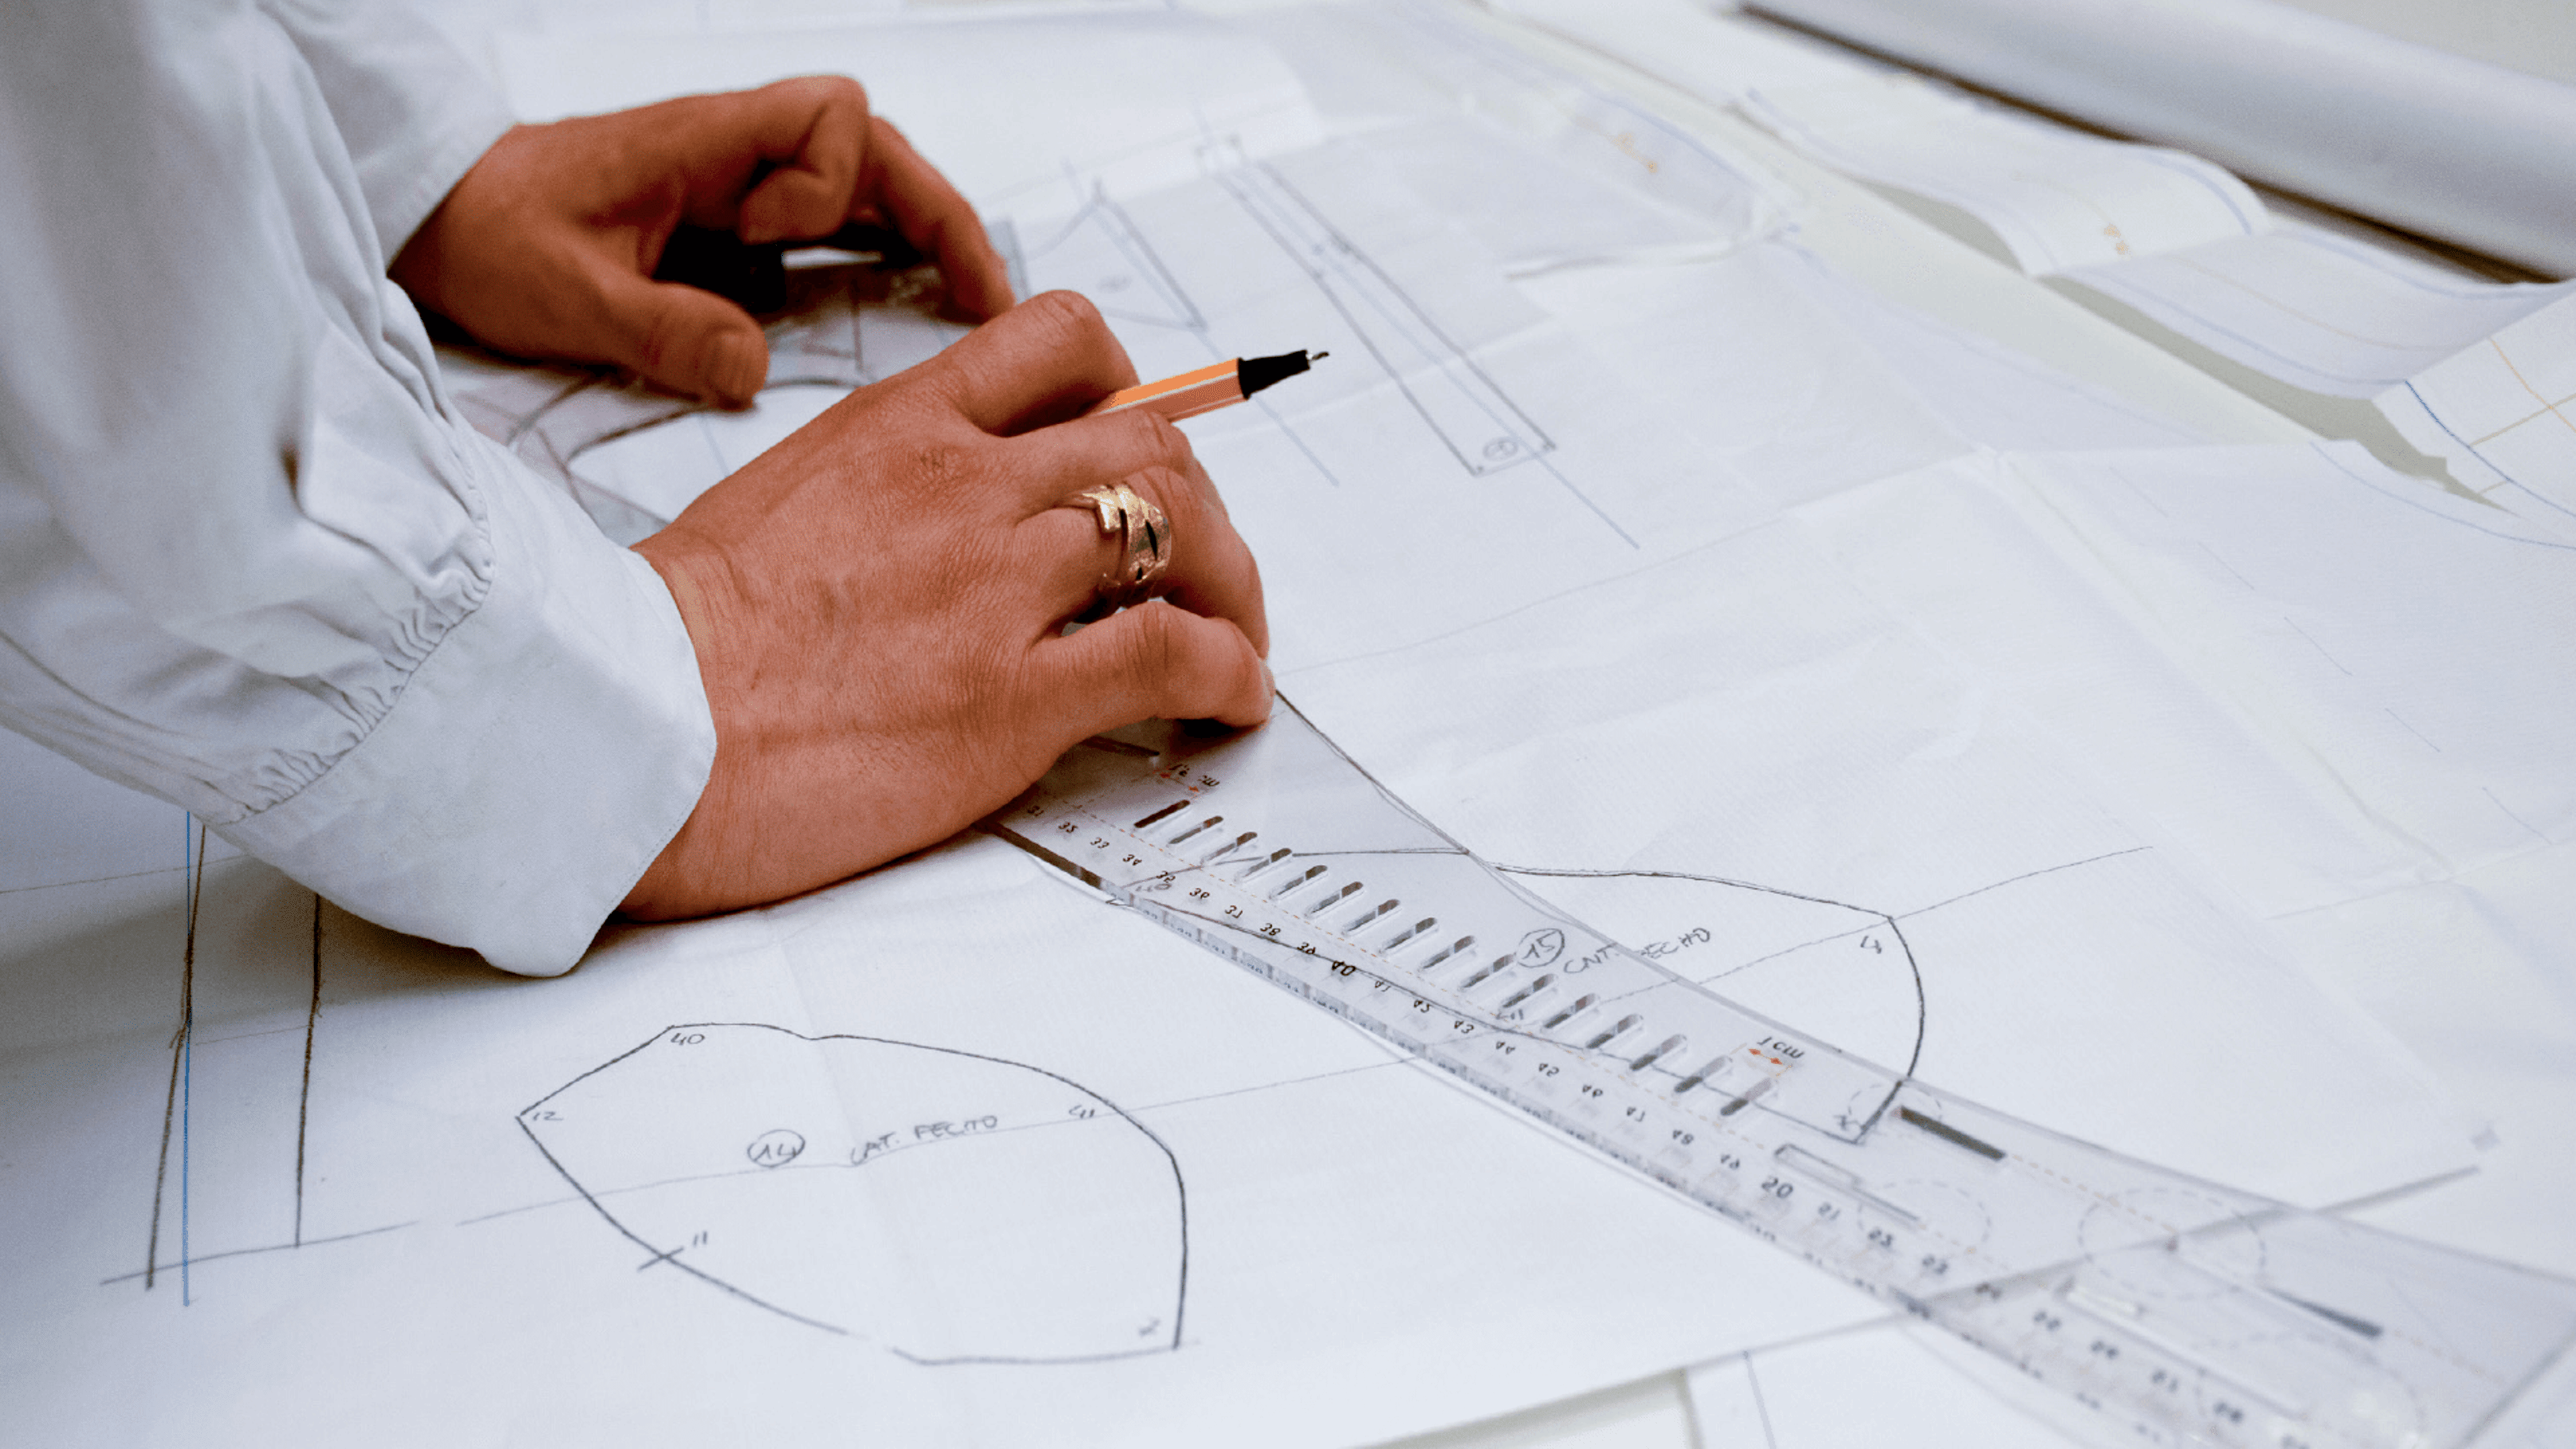 Primer plano de las manos de un diseñador utilizando una regla y un lápiz para diseñar un patrón de ropa, destacando la meticulosa planificación de la prenda.

